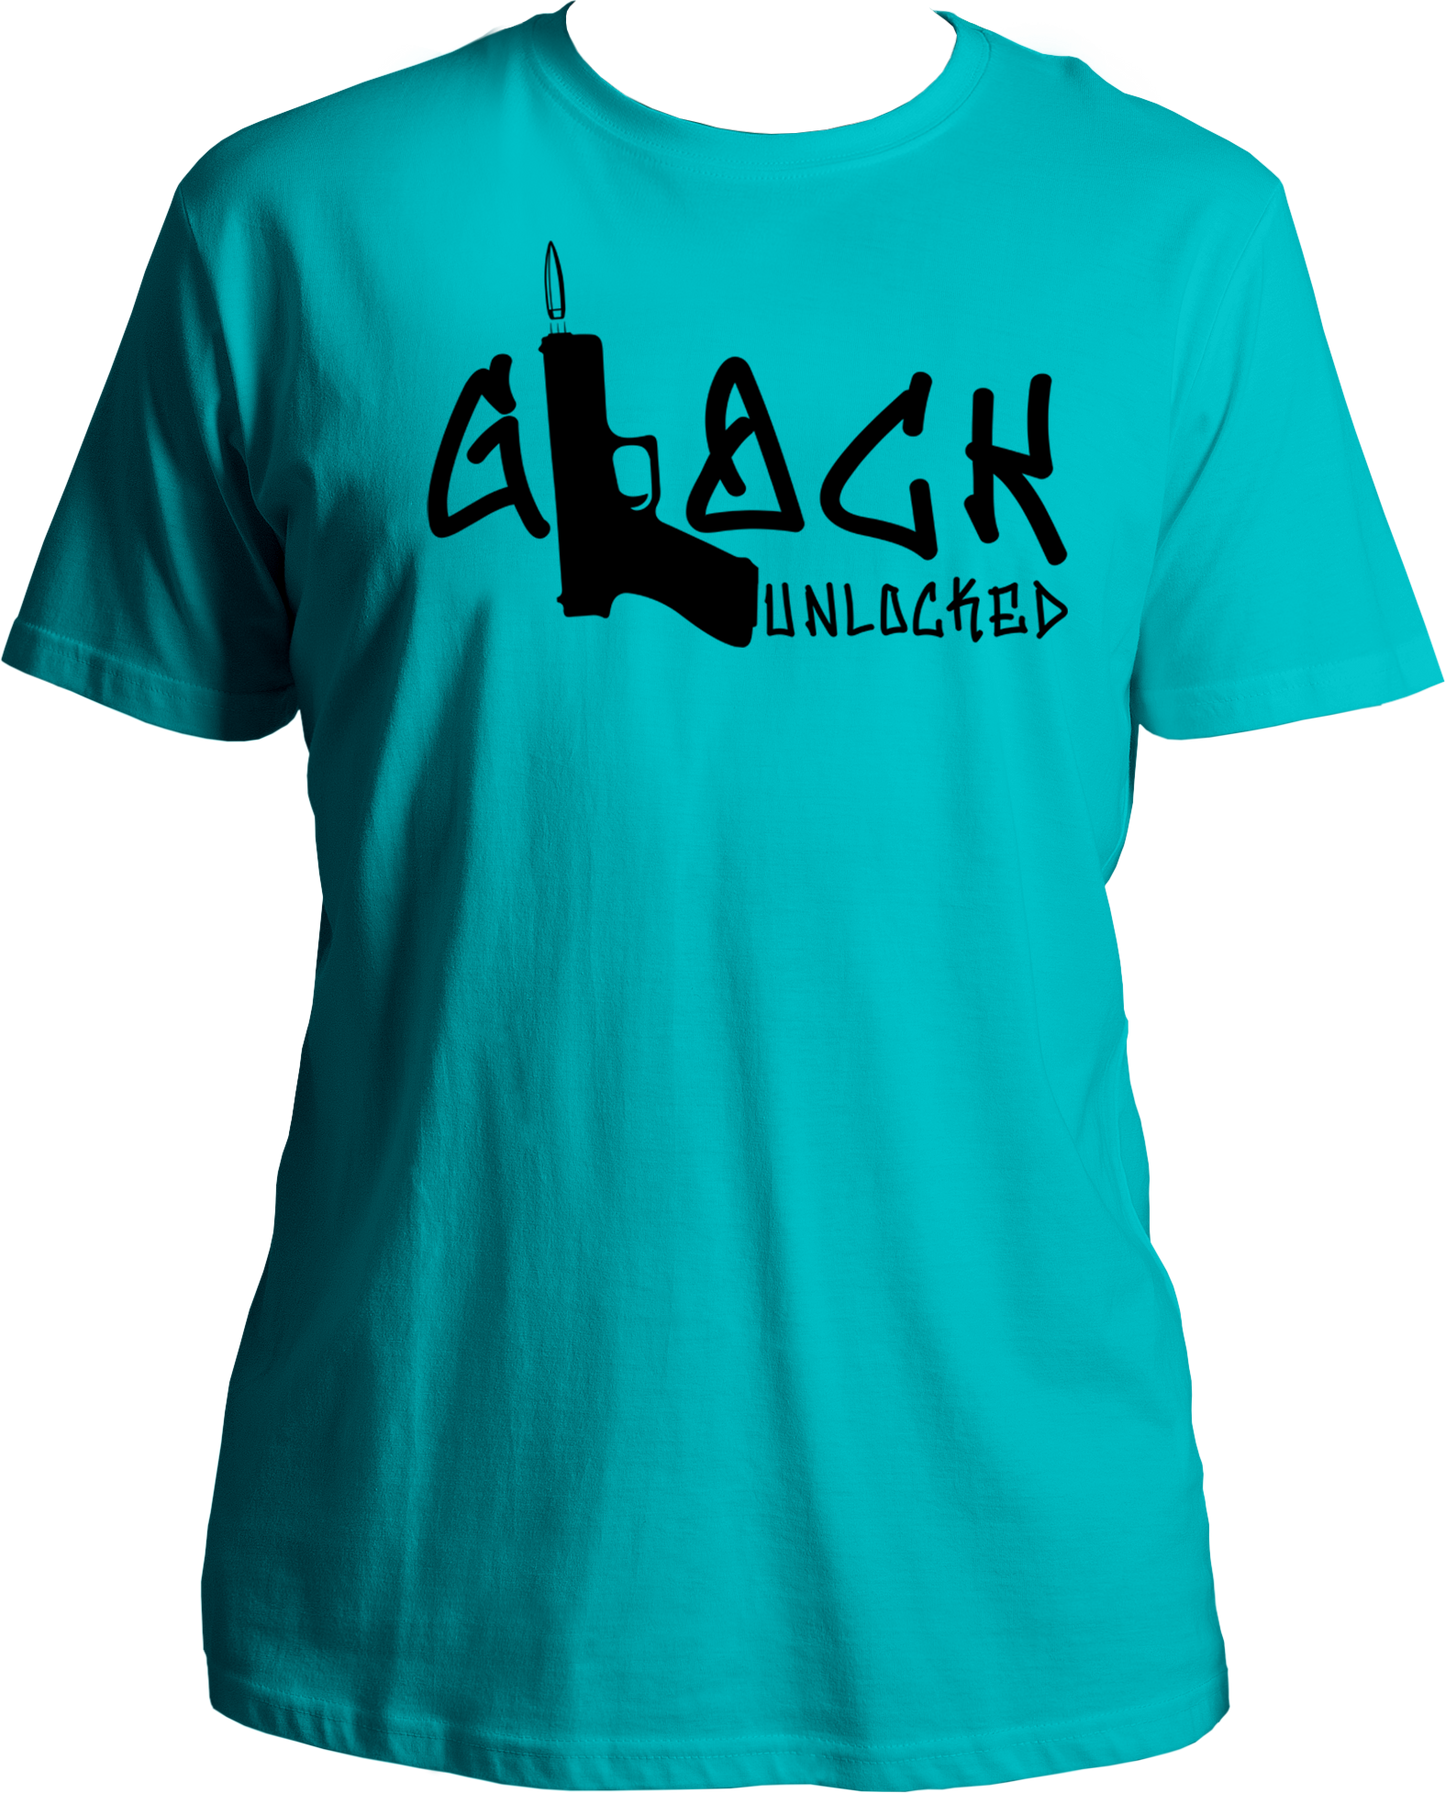 Glock Unlocked Unisex T-Shirts